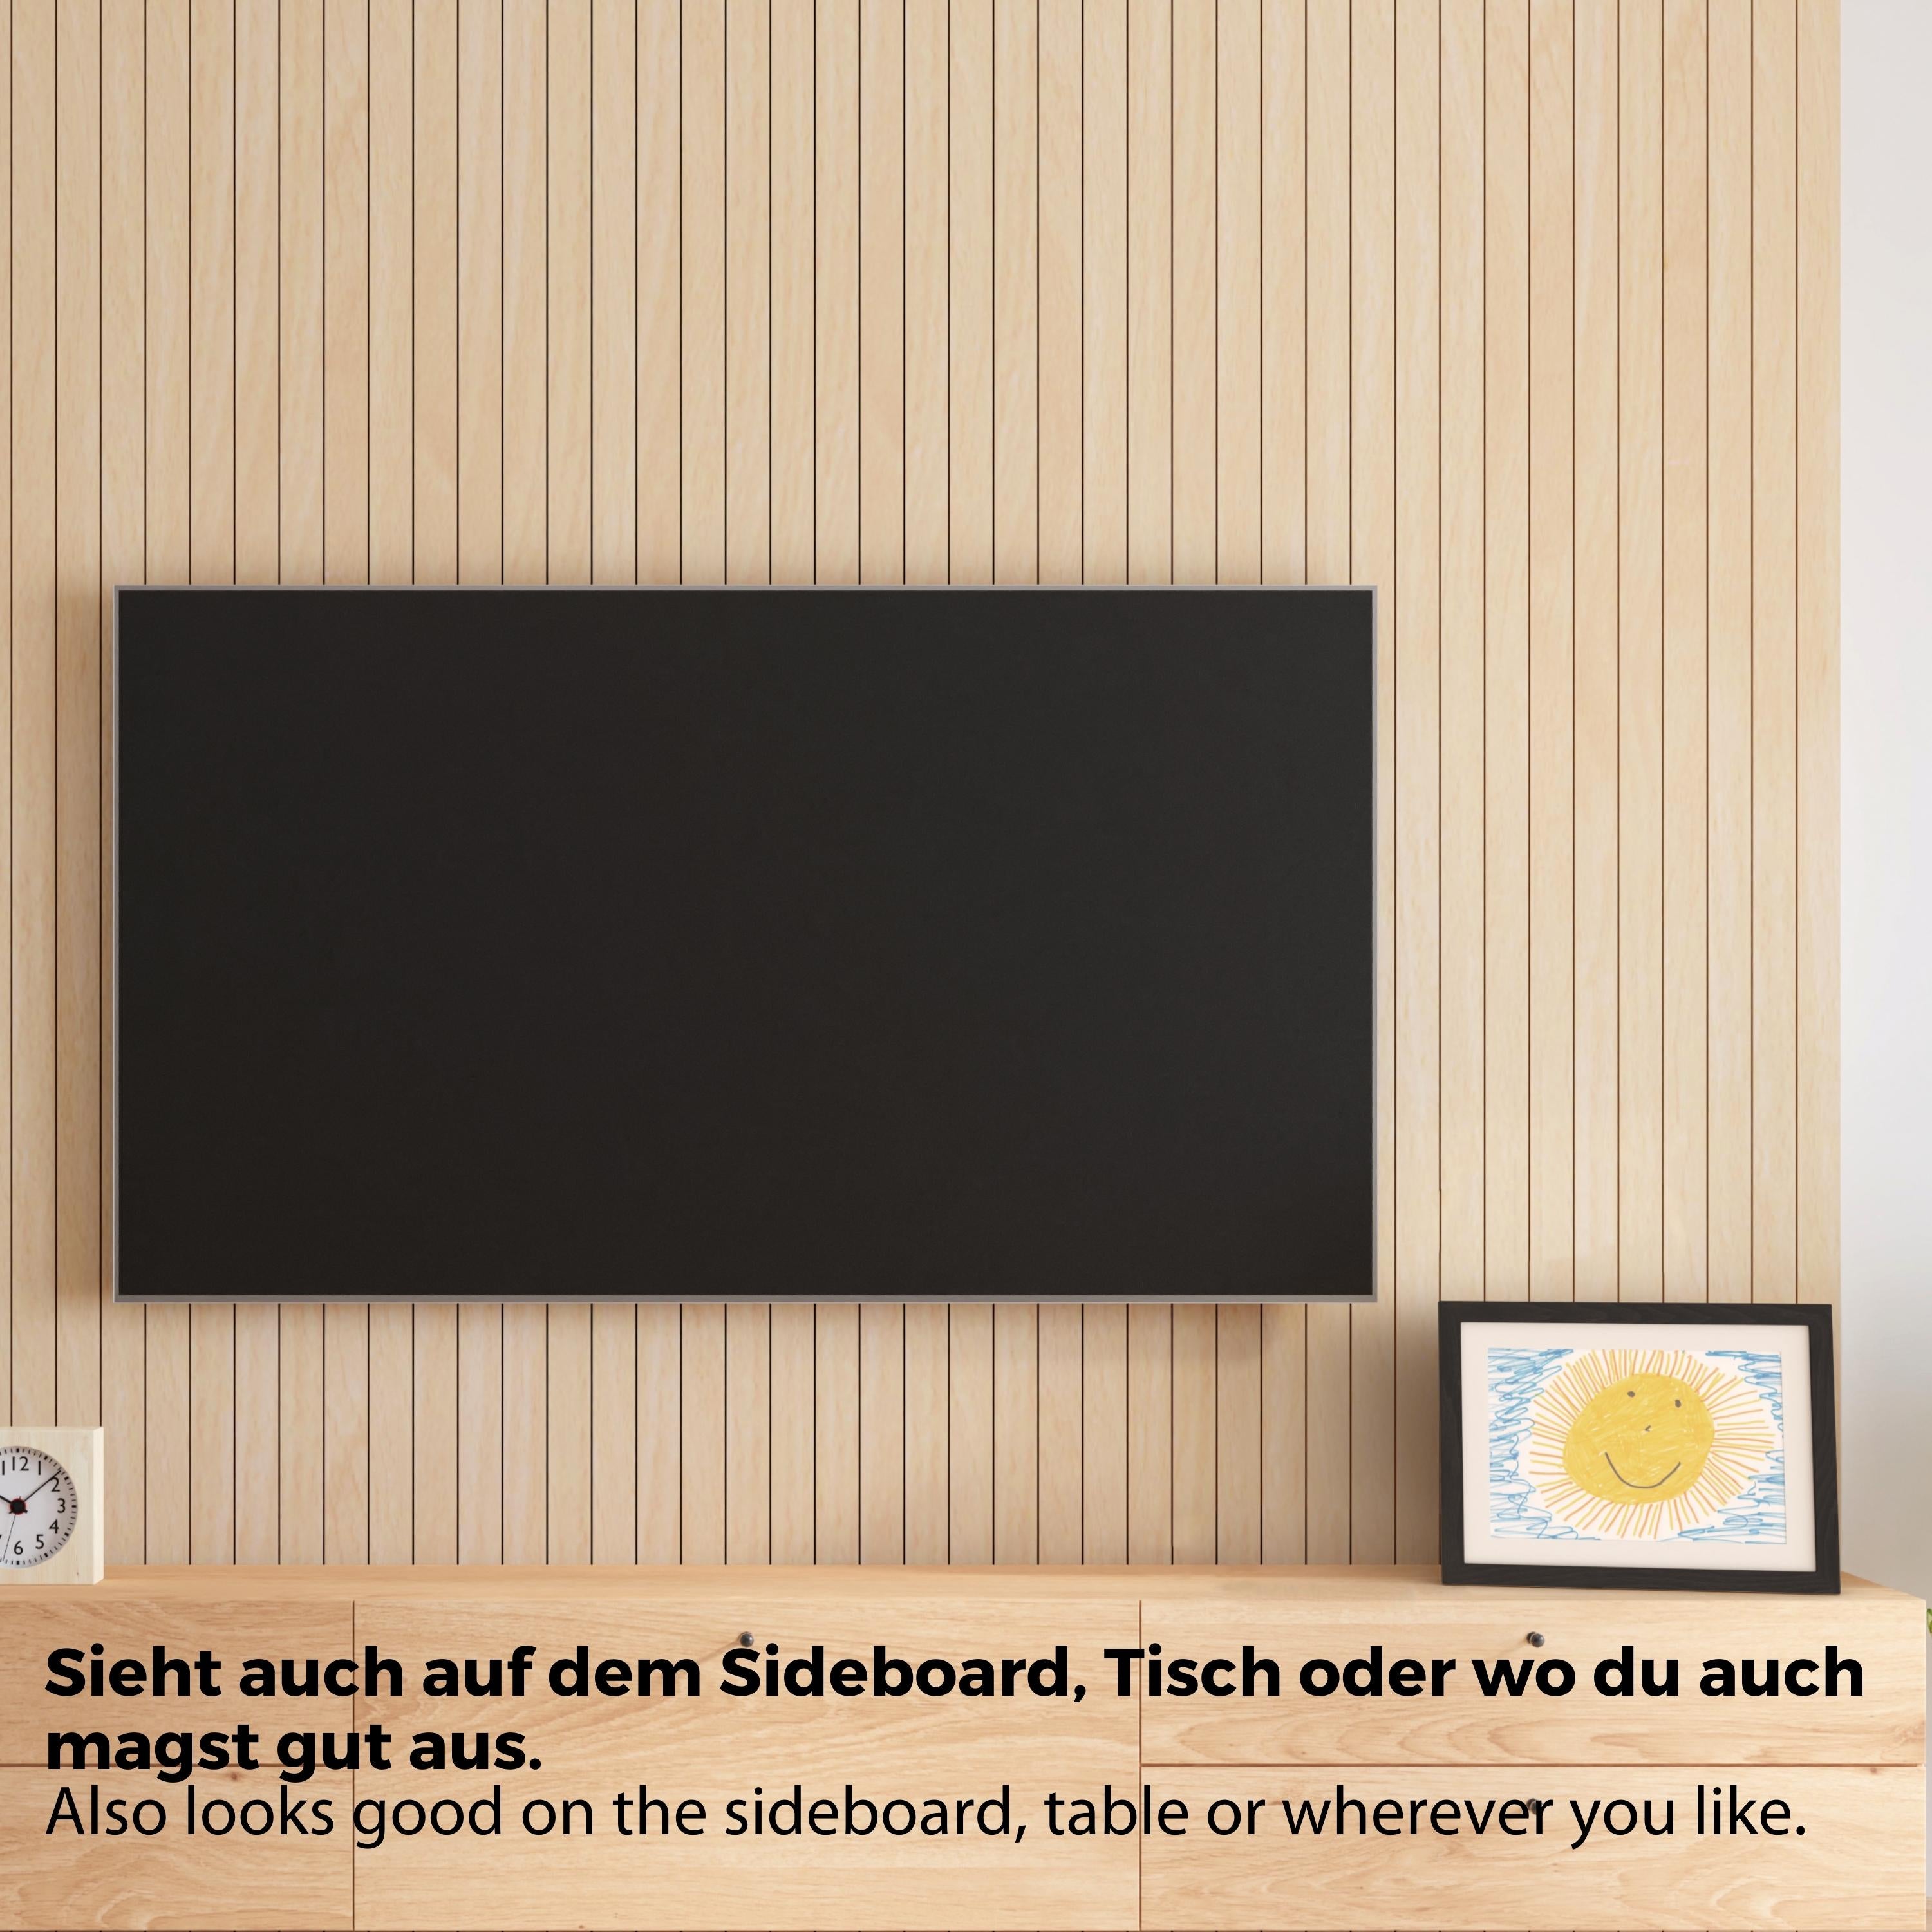 Schwarzer Bilderrahmen mit Bild steht auf einer Fernsehbank. Neben dem Rahmen hängt ein Fernseher an der Wand.